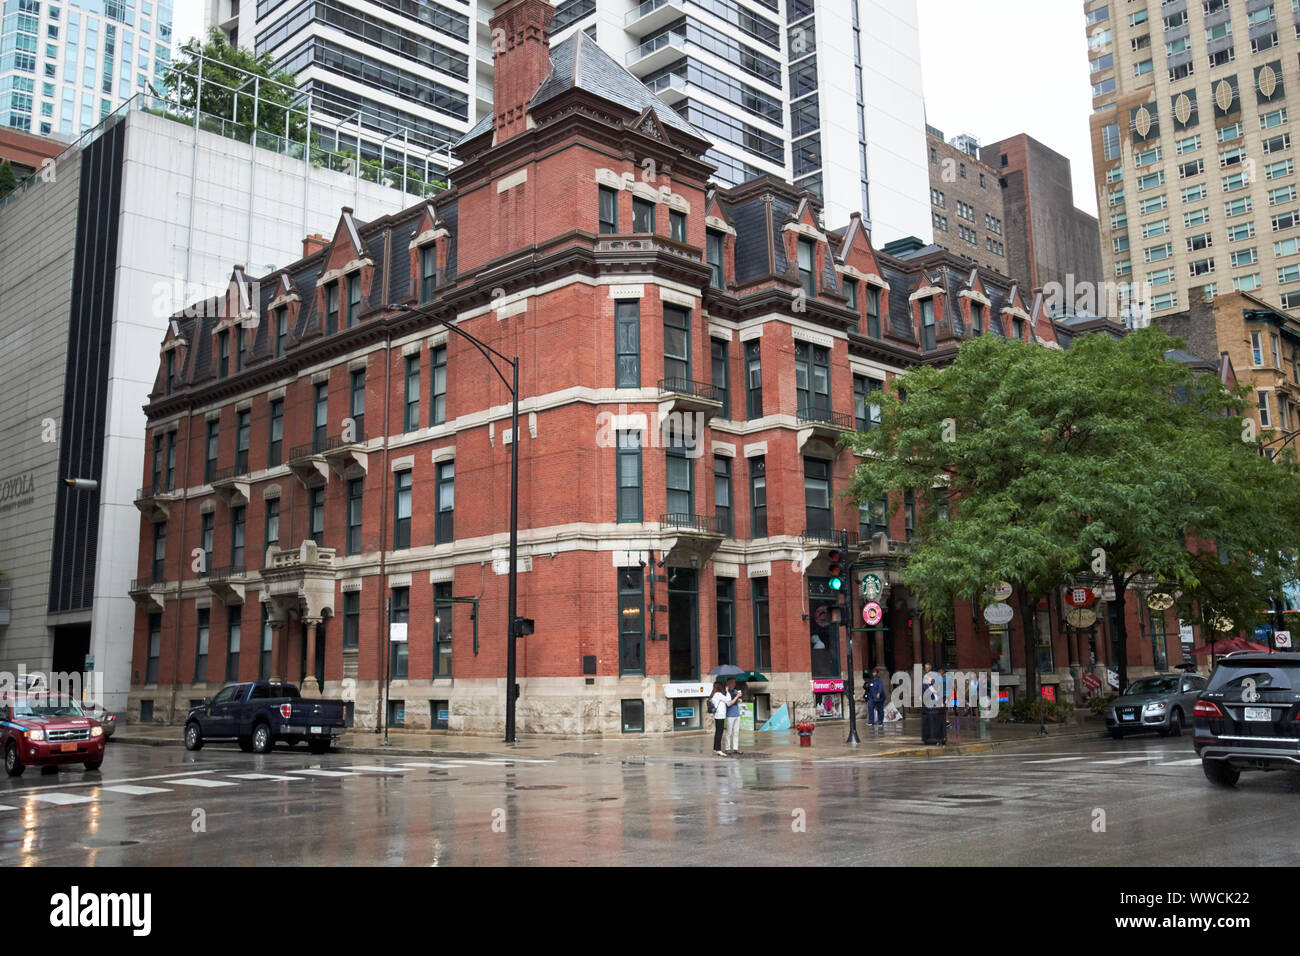 Hotel St Benoît appartements immeuble historique Chicago Illinois USA Banque D'Images